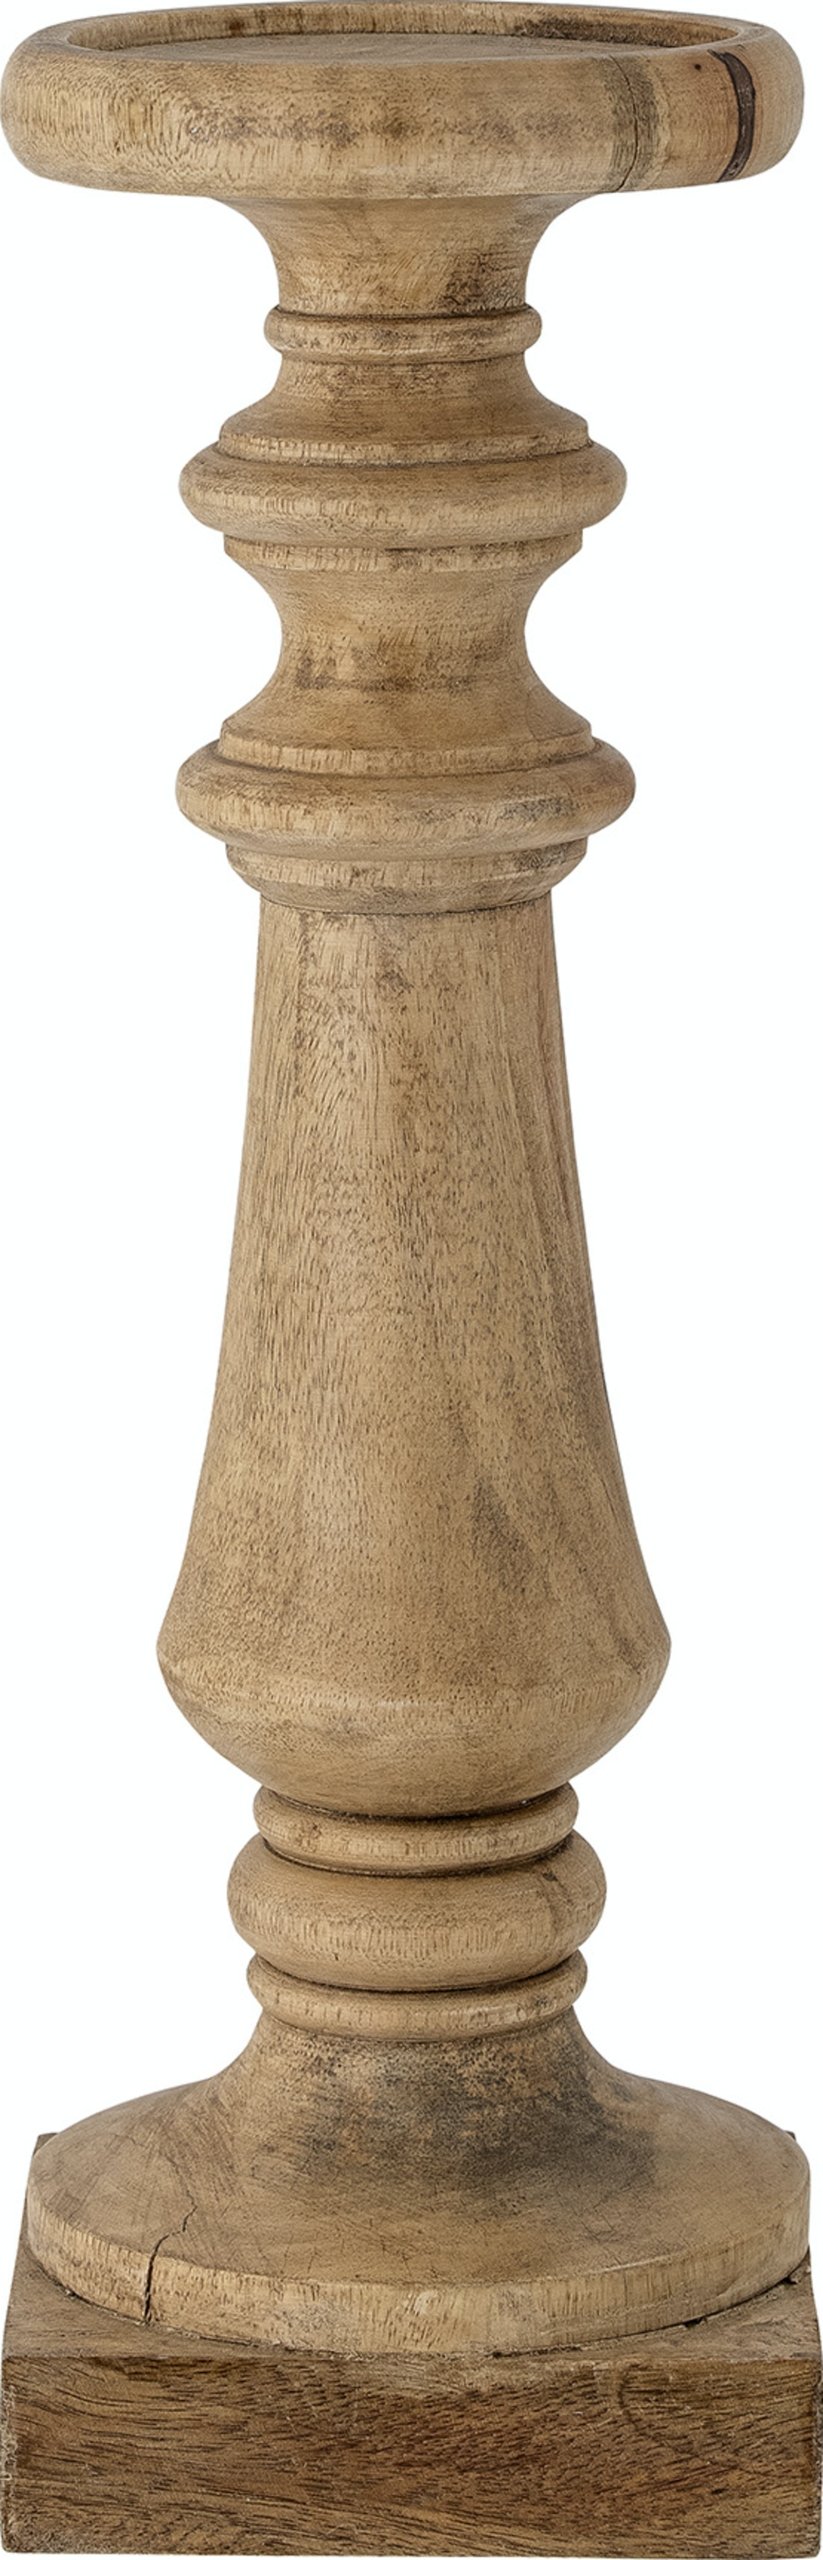 12: Noore, Piedestal, Mangotræ by Bloomingville (H: 46 cm. x B: 15 cm. x L: 15 cm., Natur)